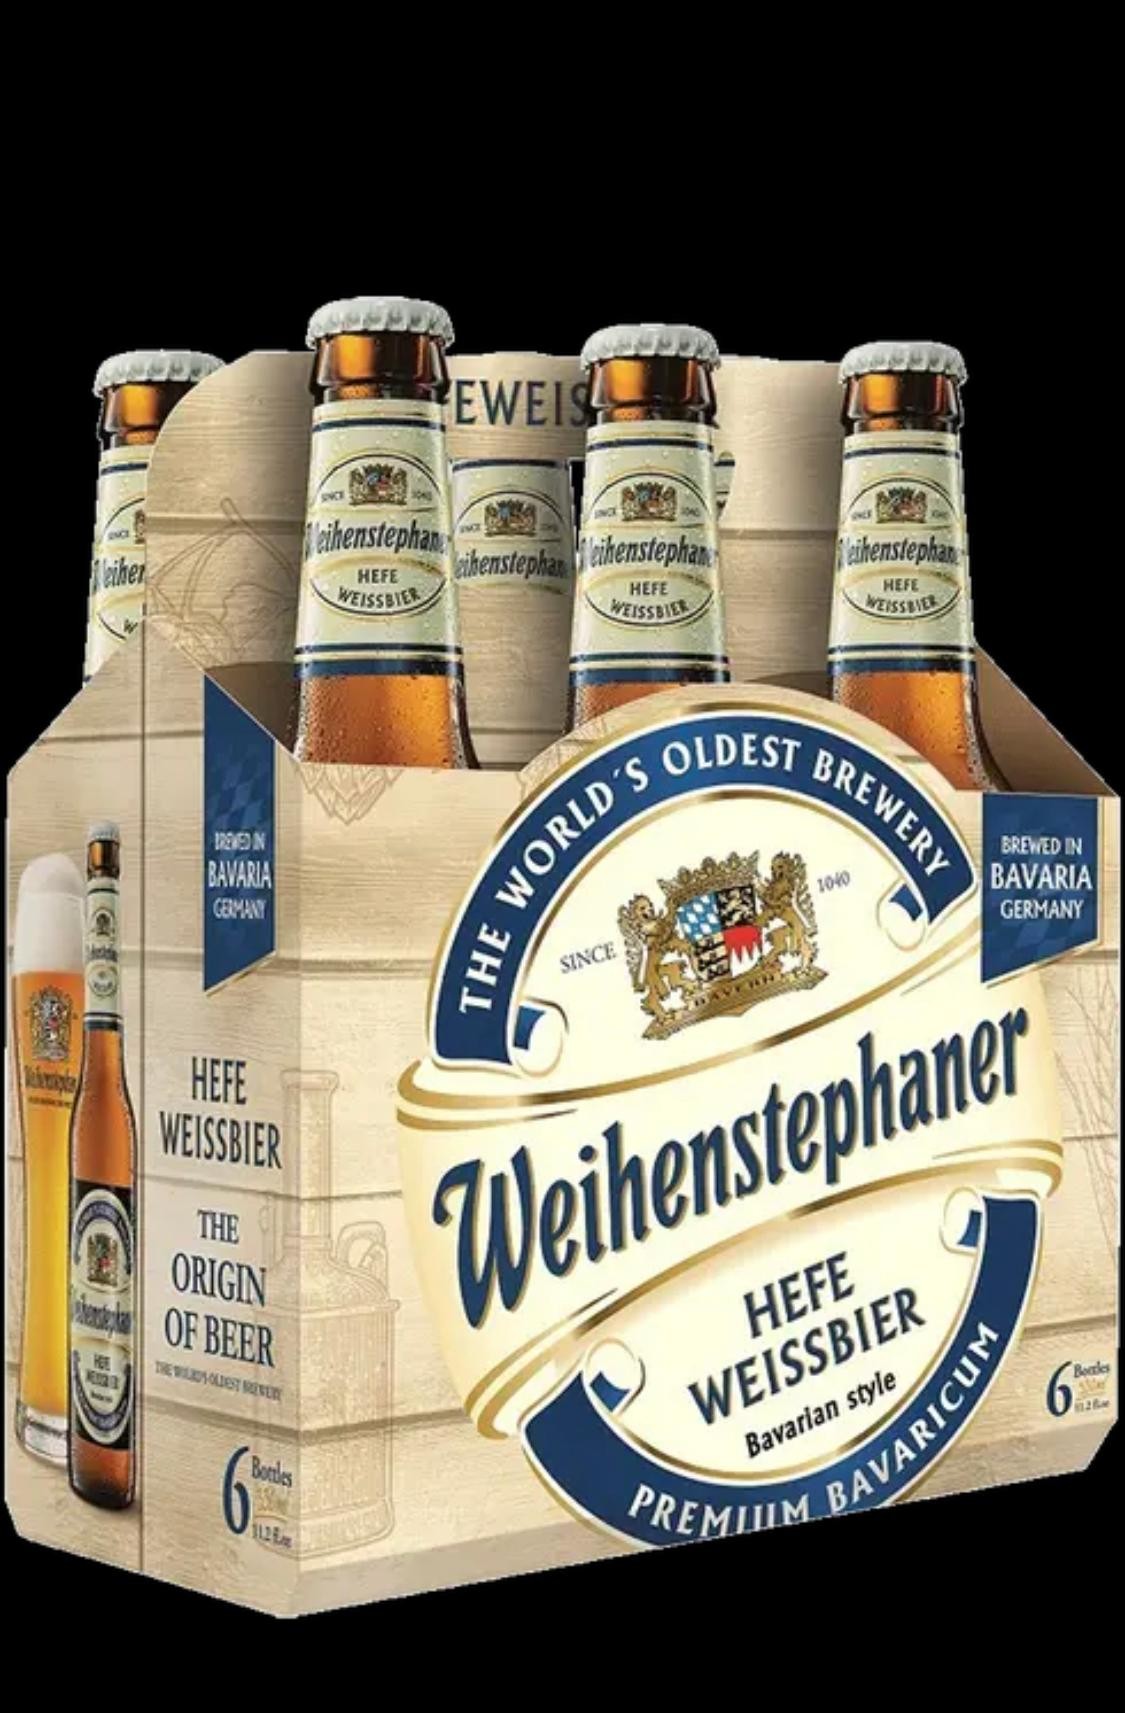 Weihenstephaner-Hefe Weissbier-Bavarian Style